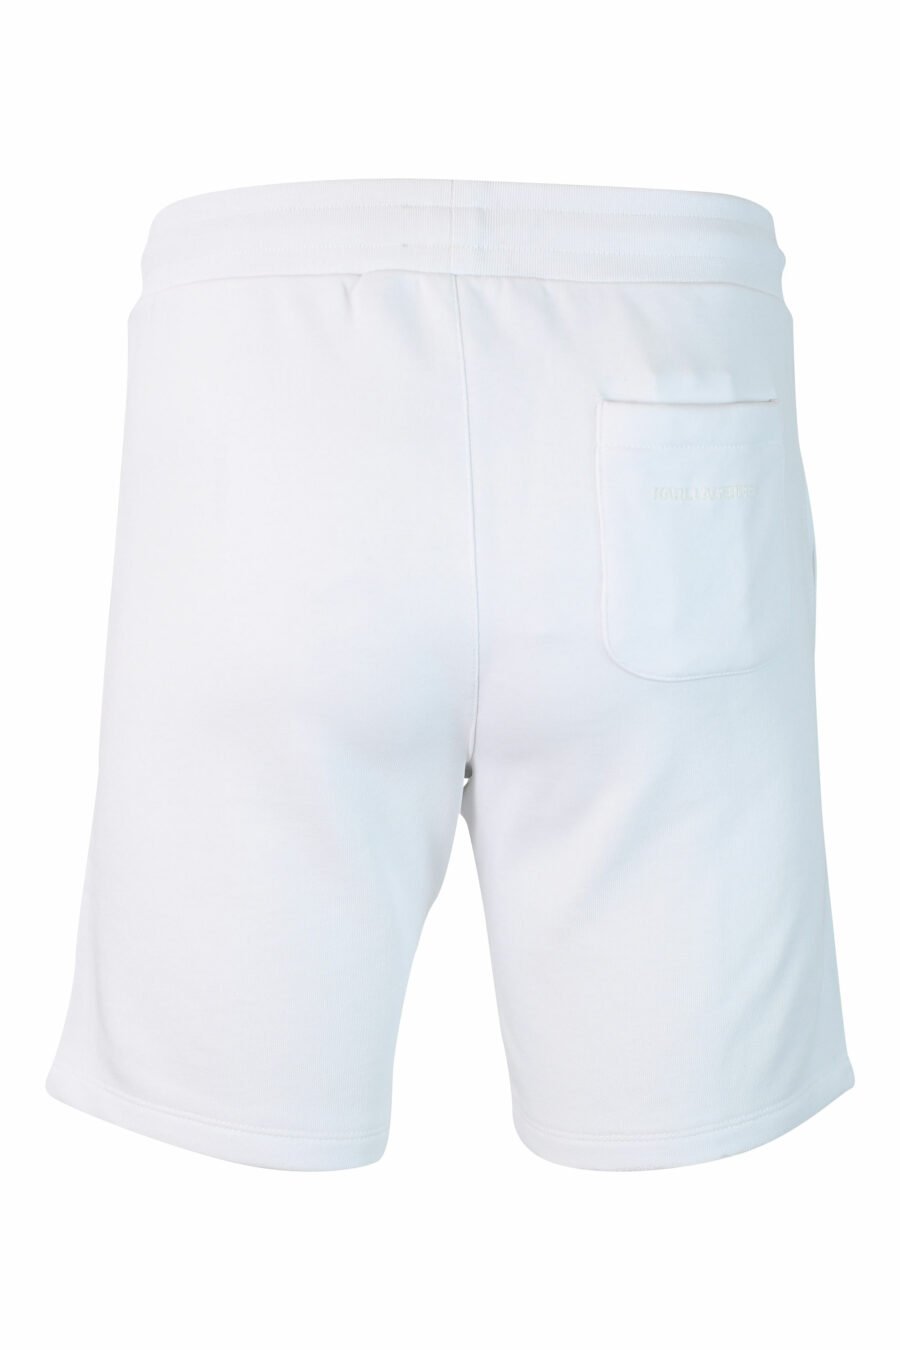 Pantalón de chándal blanco corto con logo en silueta negro - IMG 9900 1